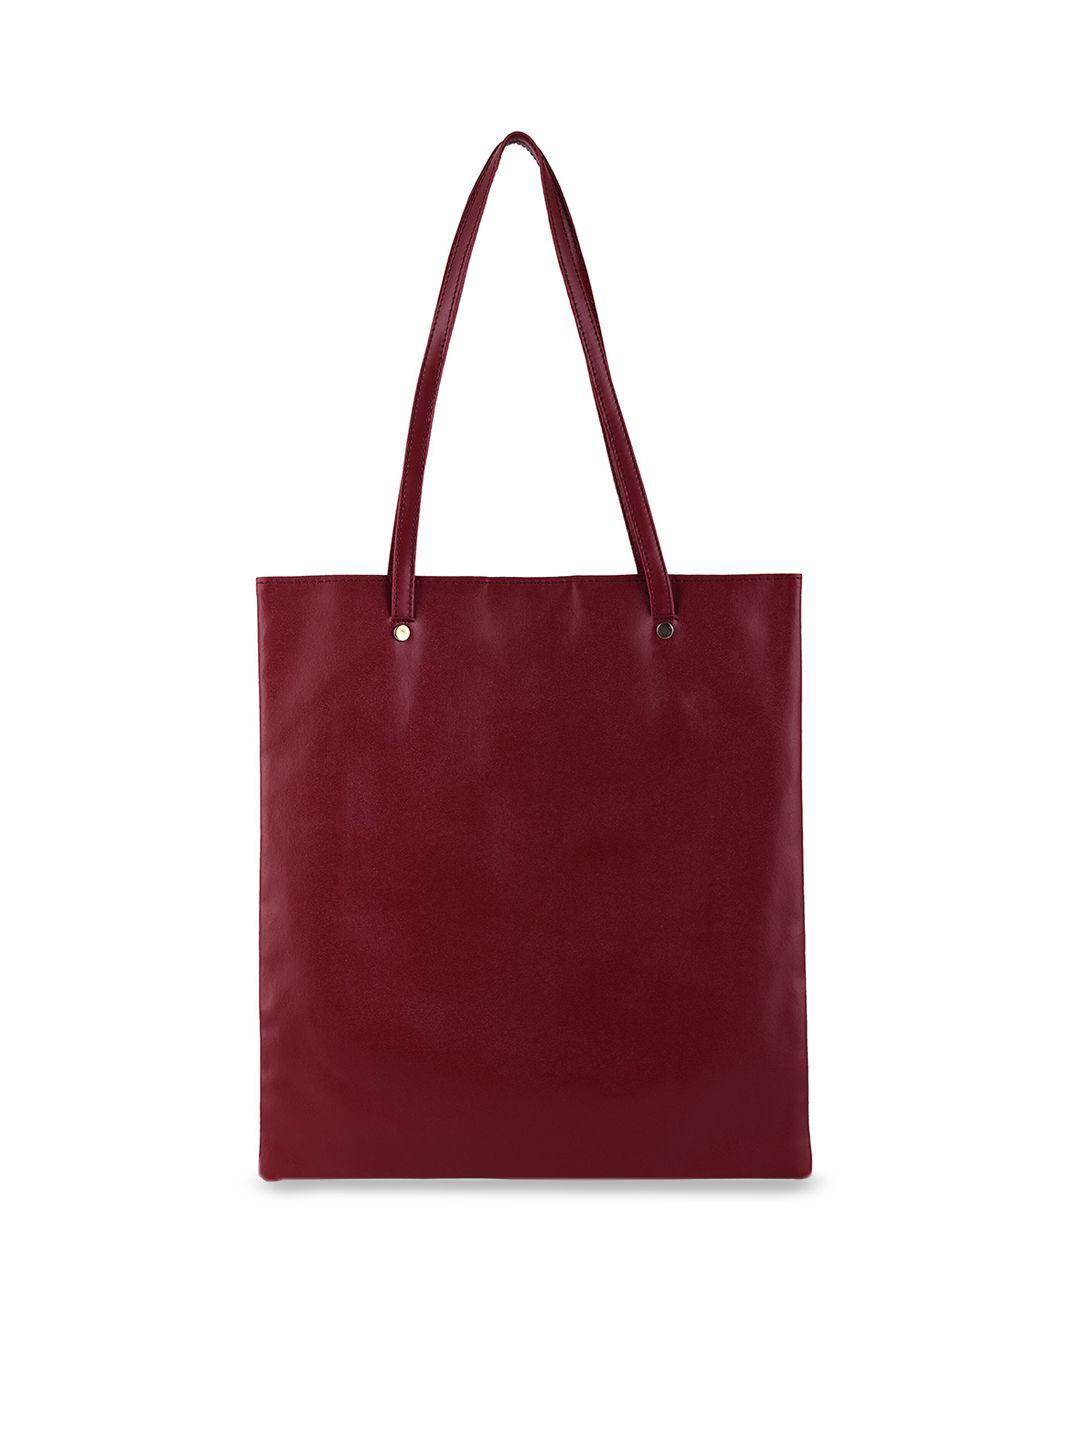 toteteca two handles oversized shopper shoulder bag